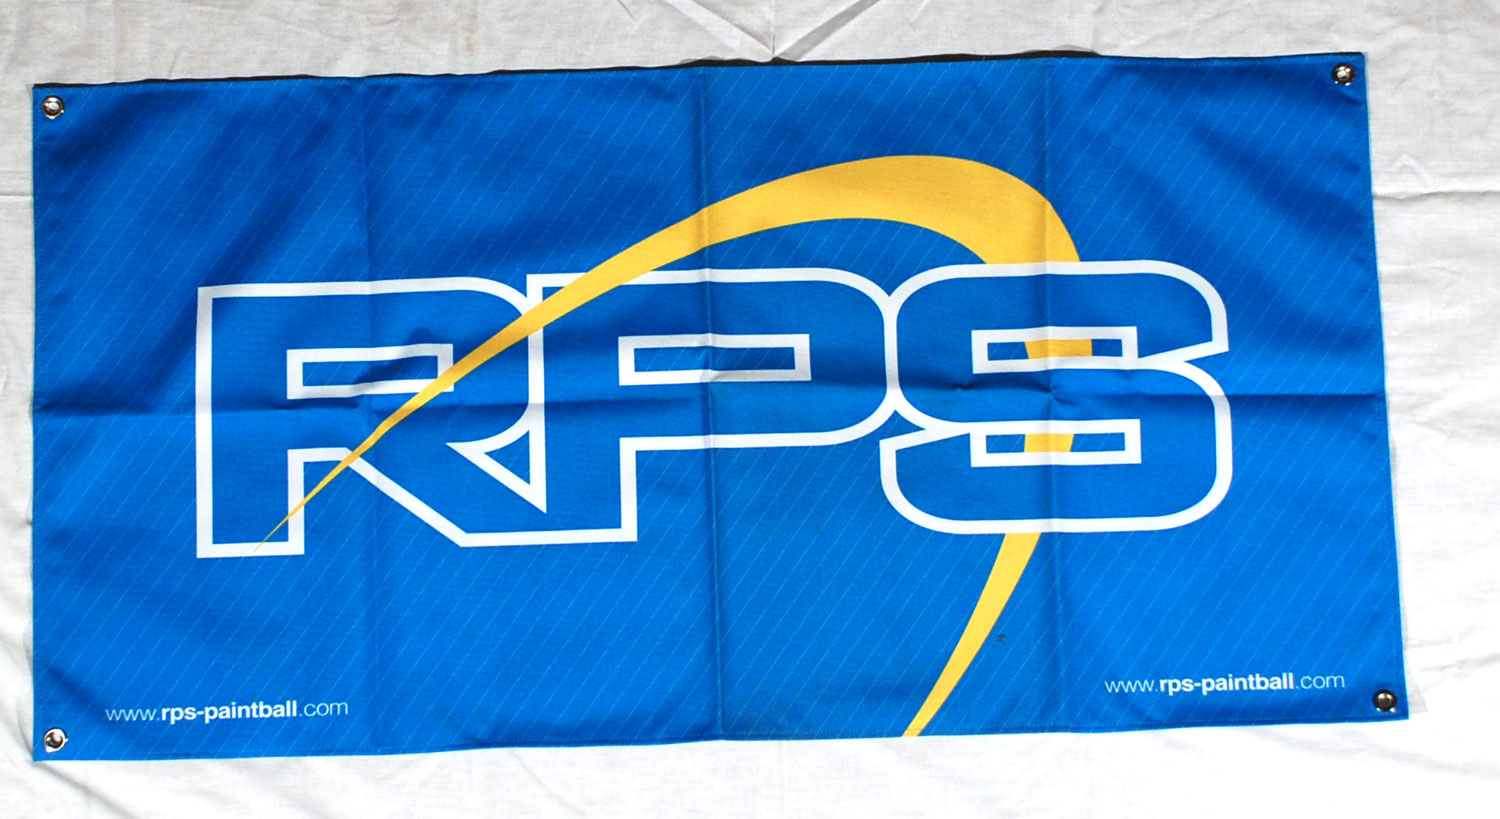 RP Scherer Banner - G.I. Sportz